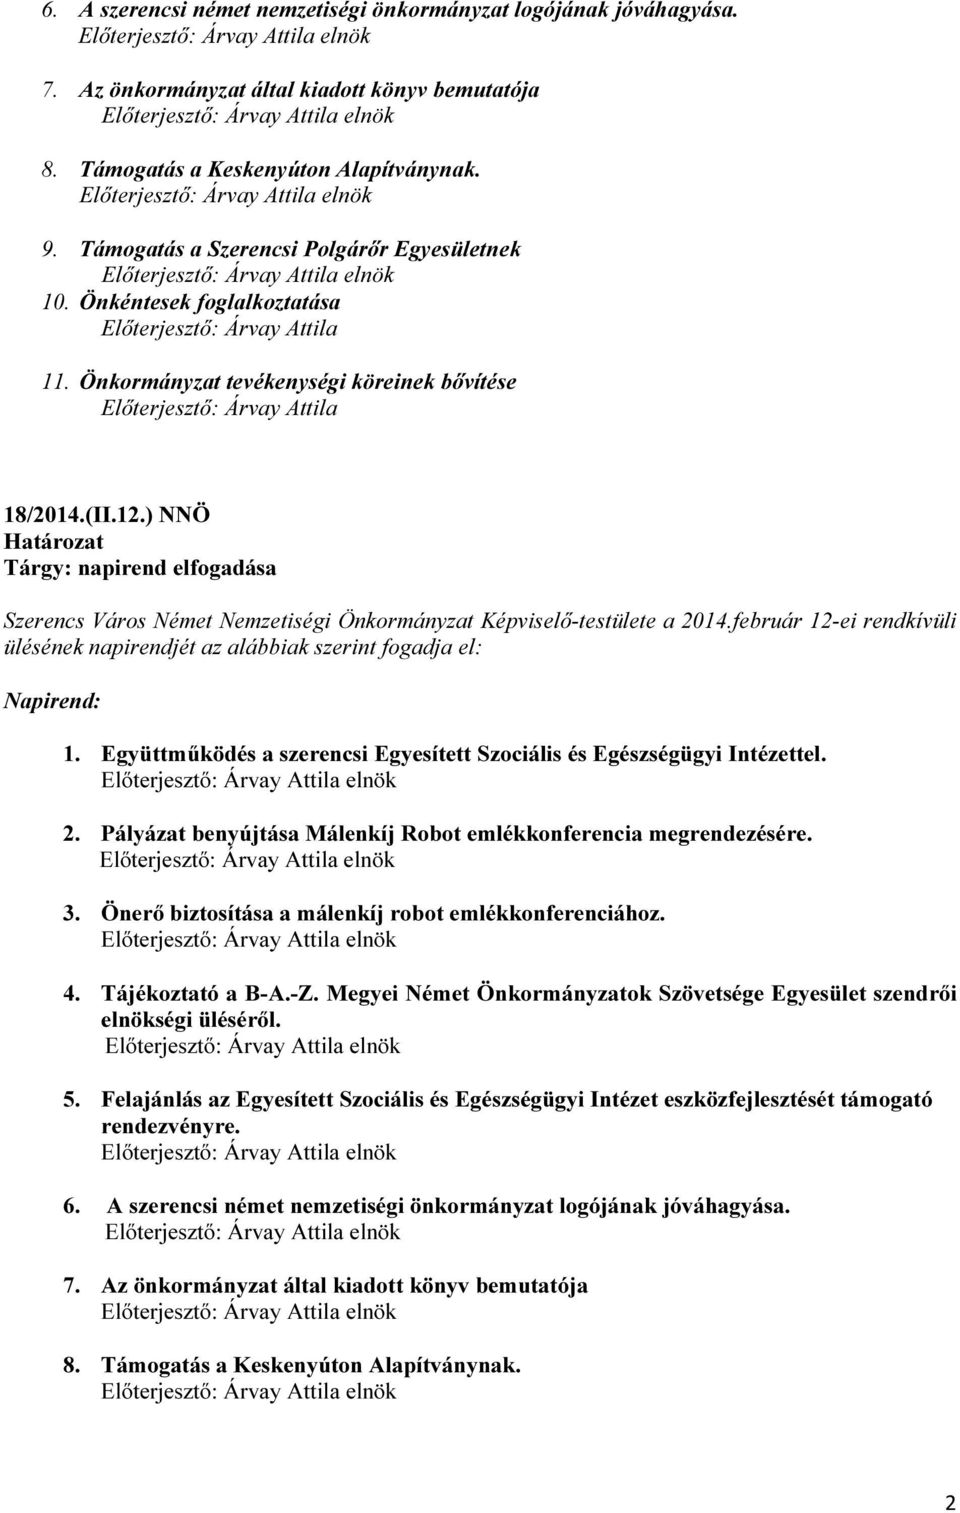 ) NNÖ Tárgy: napirend elfogadása Szerencs Város Német Nemzetiségi Önkormányzat Képviselő-testülete a 2014.február 12-ei rendkívüli ülésének napirendjét az alábbiak szerint fogadja el: Napirend: 1.